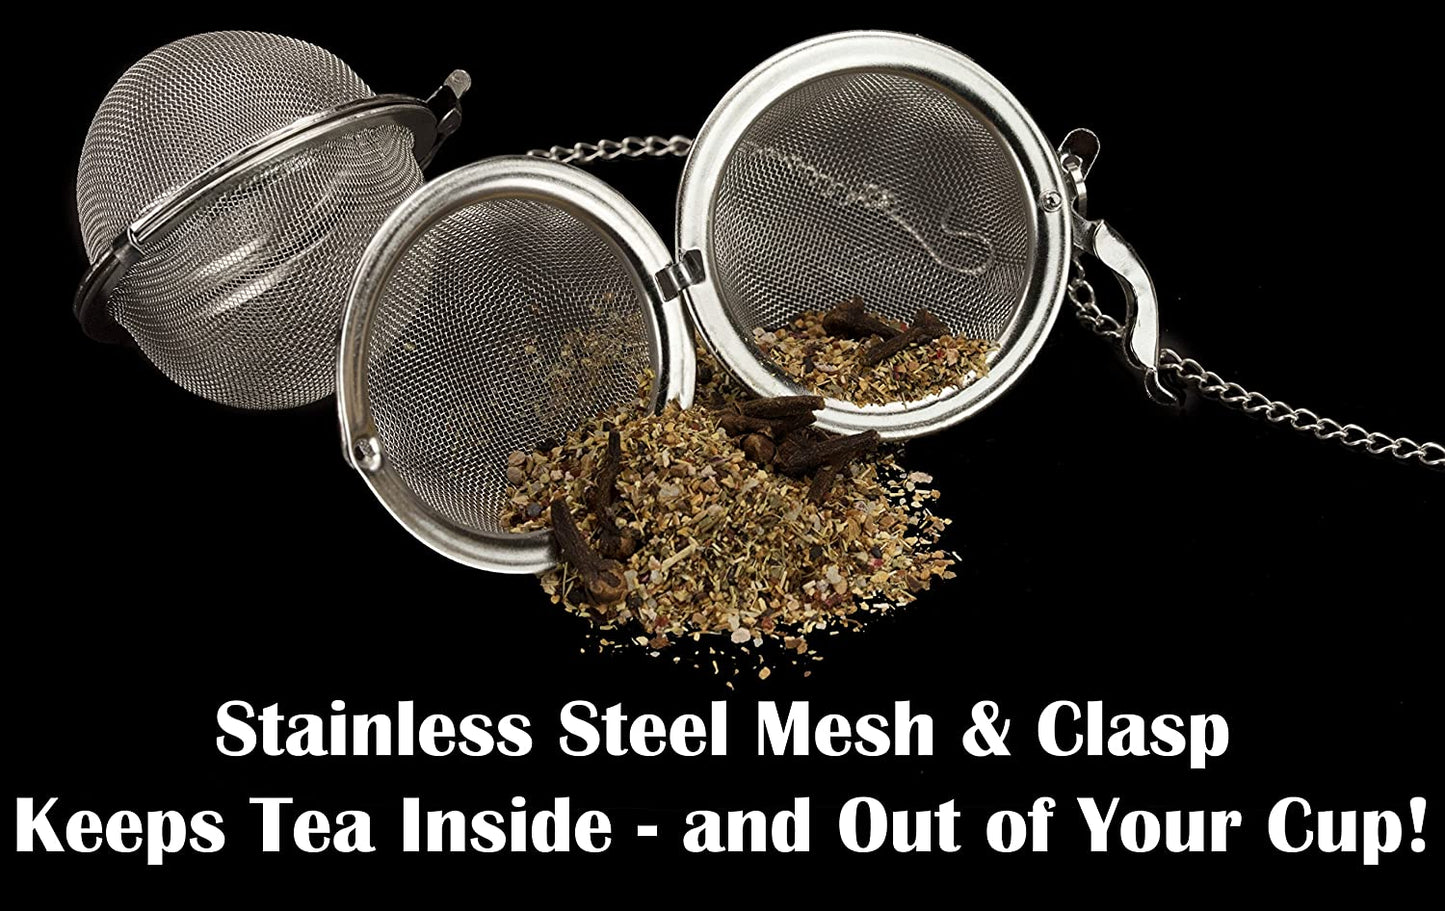 9cm Stainless Steel Tea Ball / Infuser Strainer